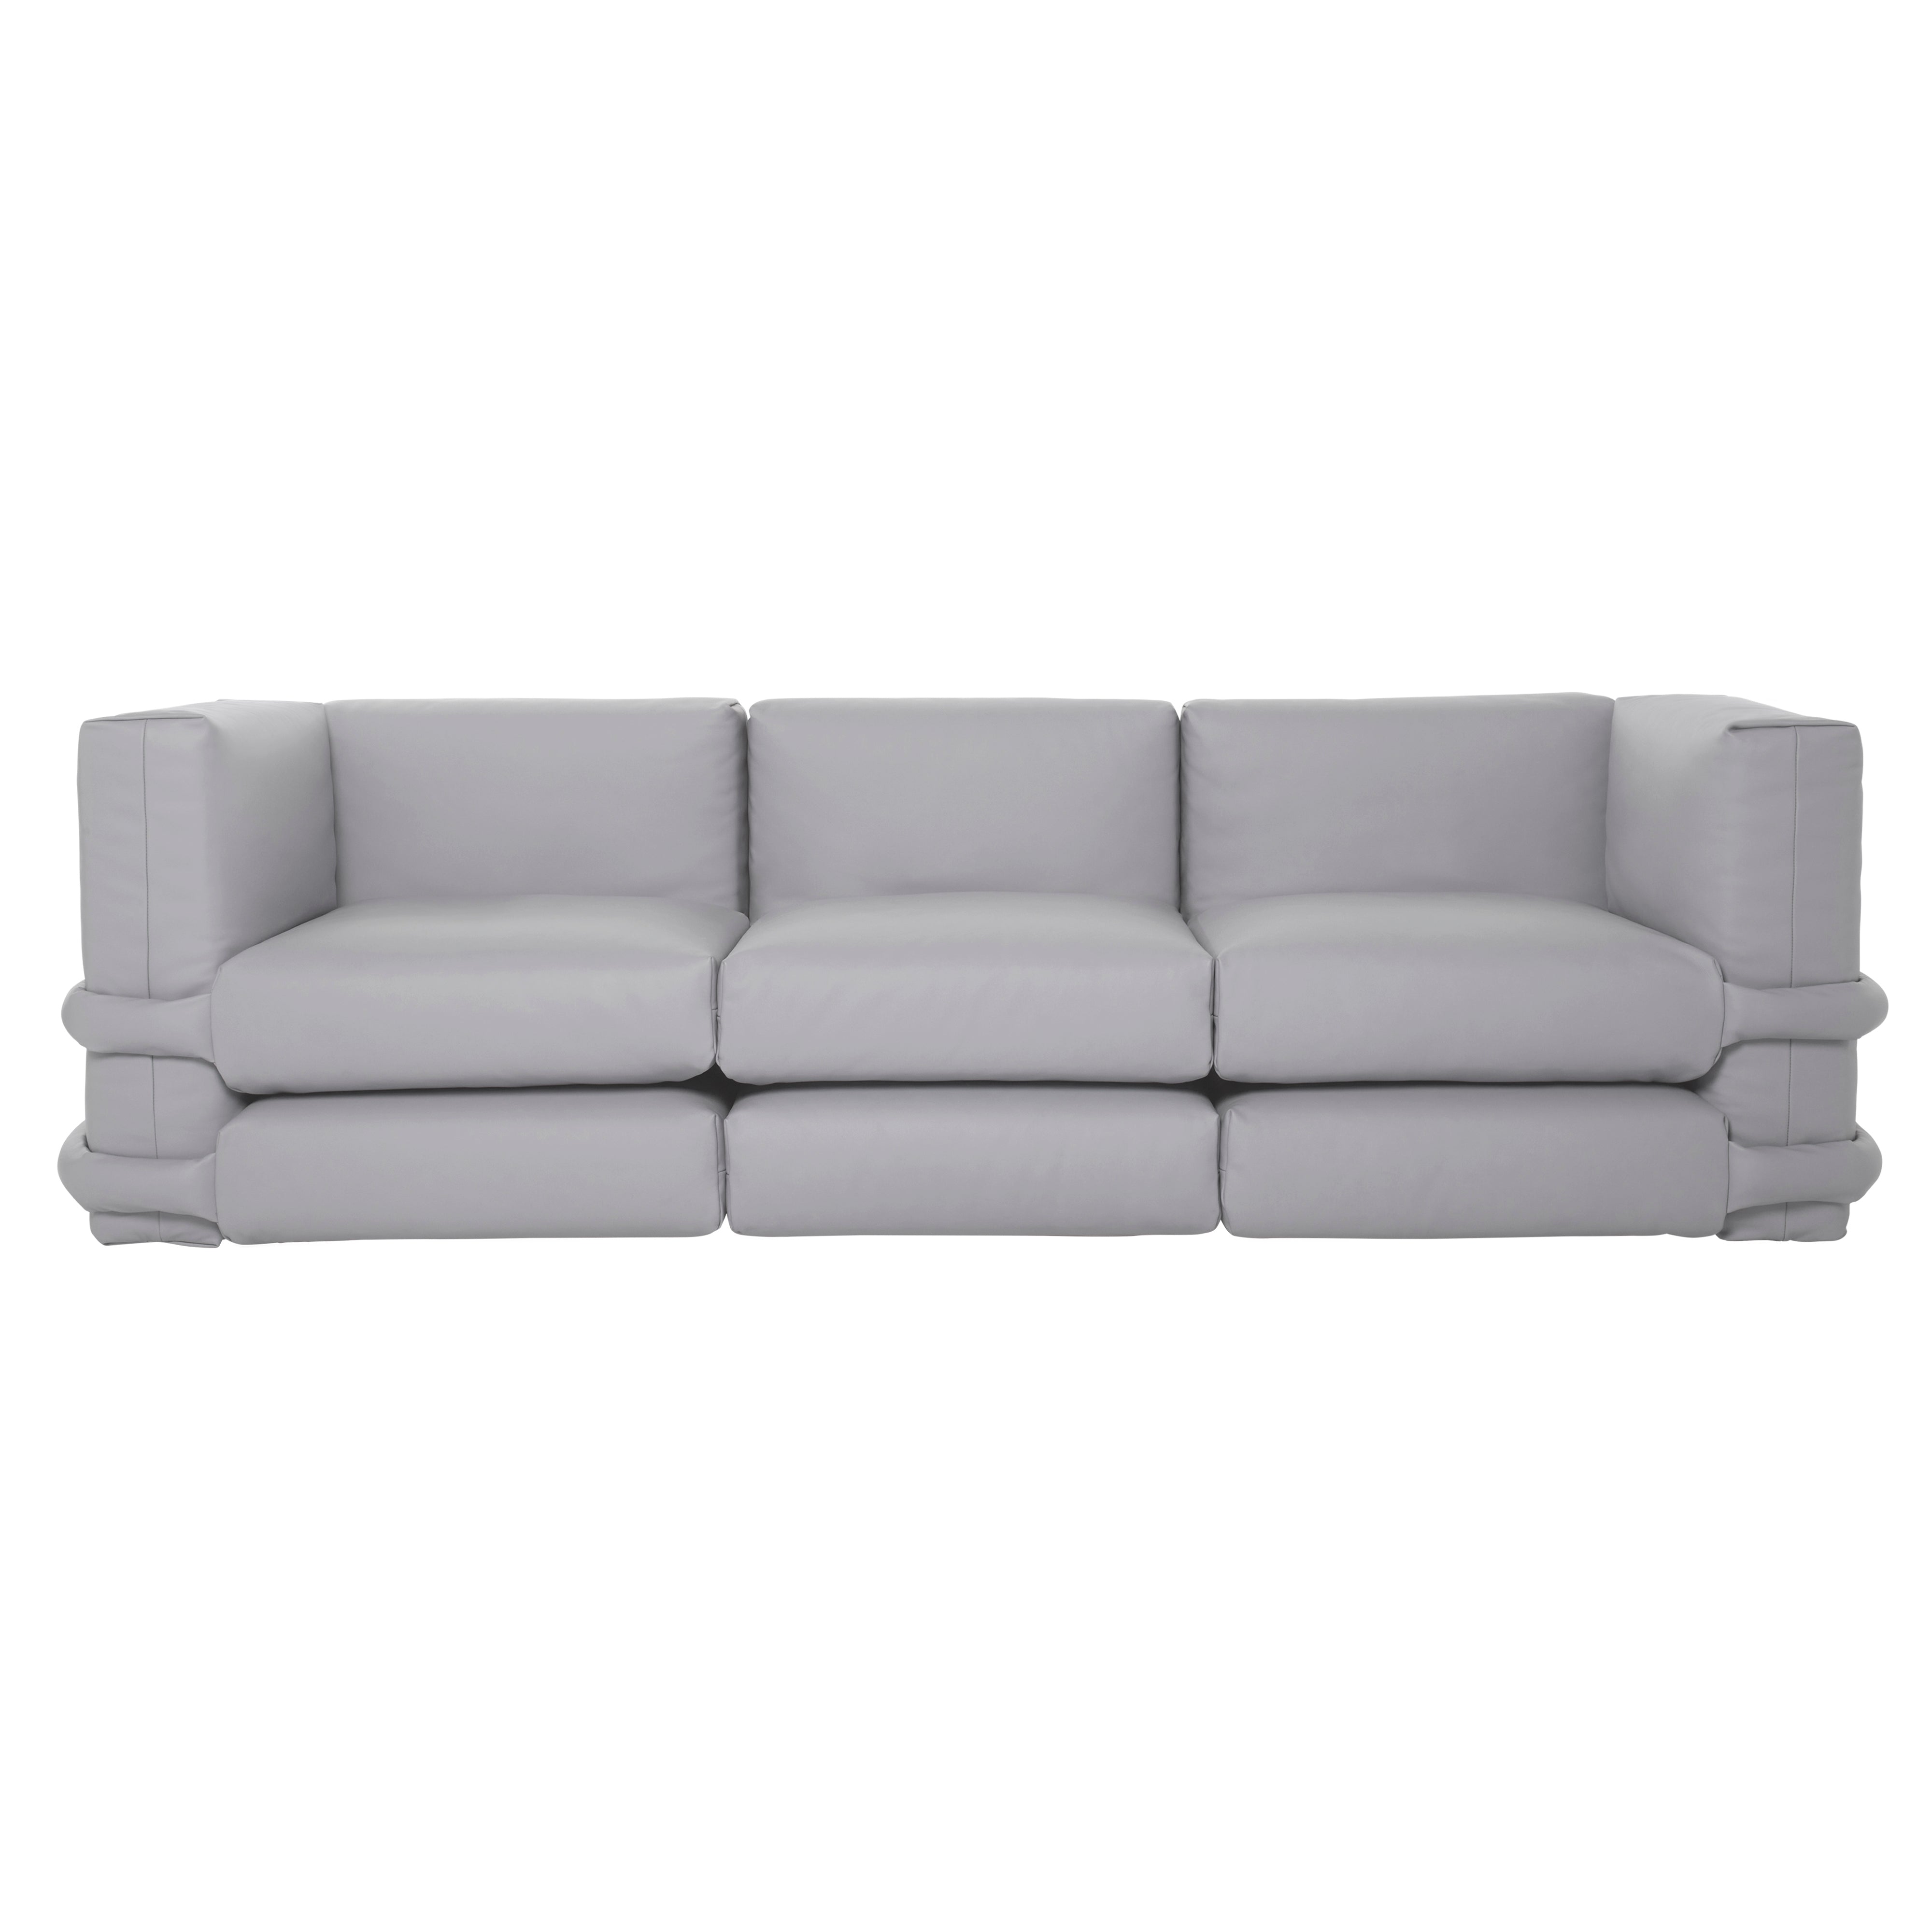 Pillow Modular Sofa: Configuration 3